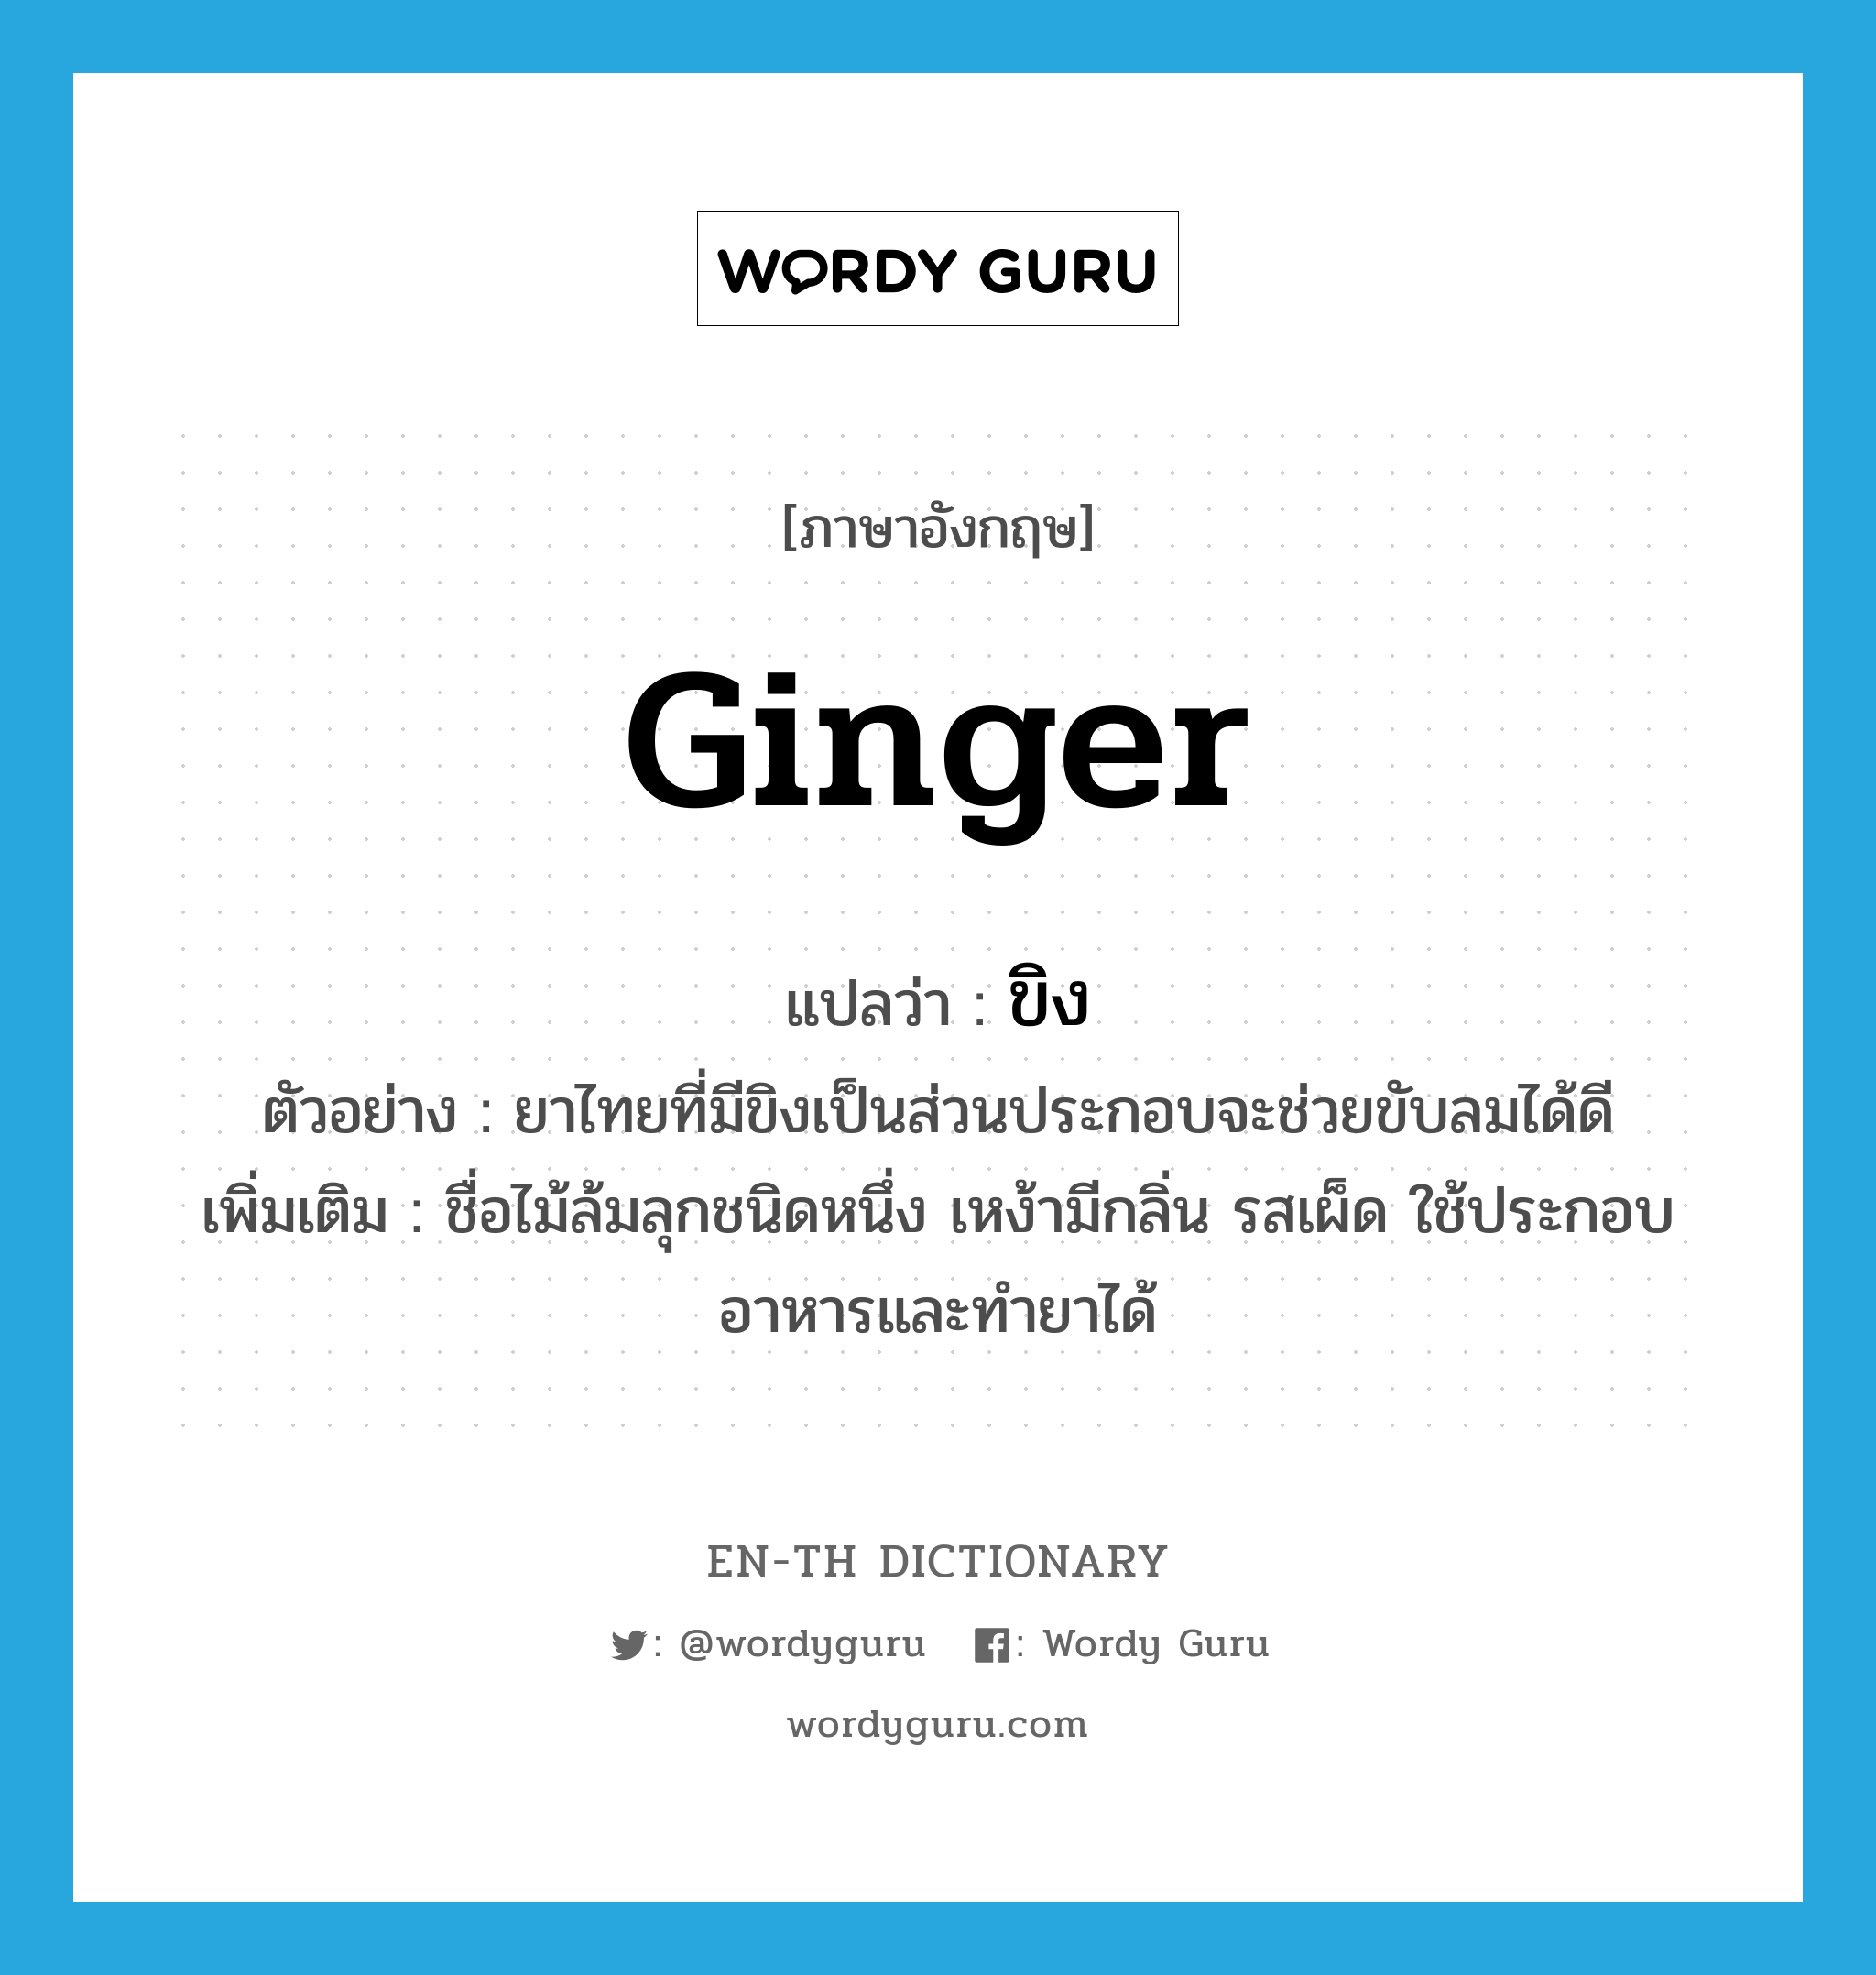 ginger แปลว่า?, คำศัพท์ภาษาอังกฤษ ginger แปลว่า ขิง ประเภท N ตัวอย่าง ยาไทยที่มีขิงเป็นส่วนประกอบจะช่วยขับลมได้ดี เพิ่มเติม ชื่อไม้ล้มลุกชนิดหนึ่ง เหง้ามีกลิ่น รสเผ็ด ใช้ประกอบอาหารและทำยาได้ หมวด N